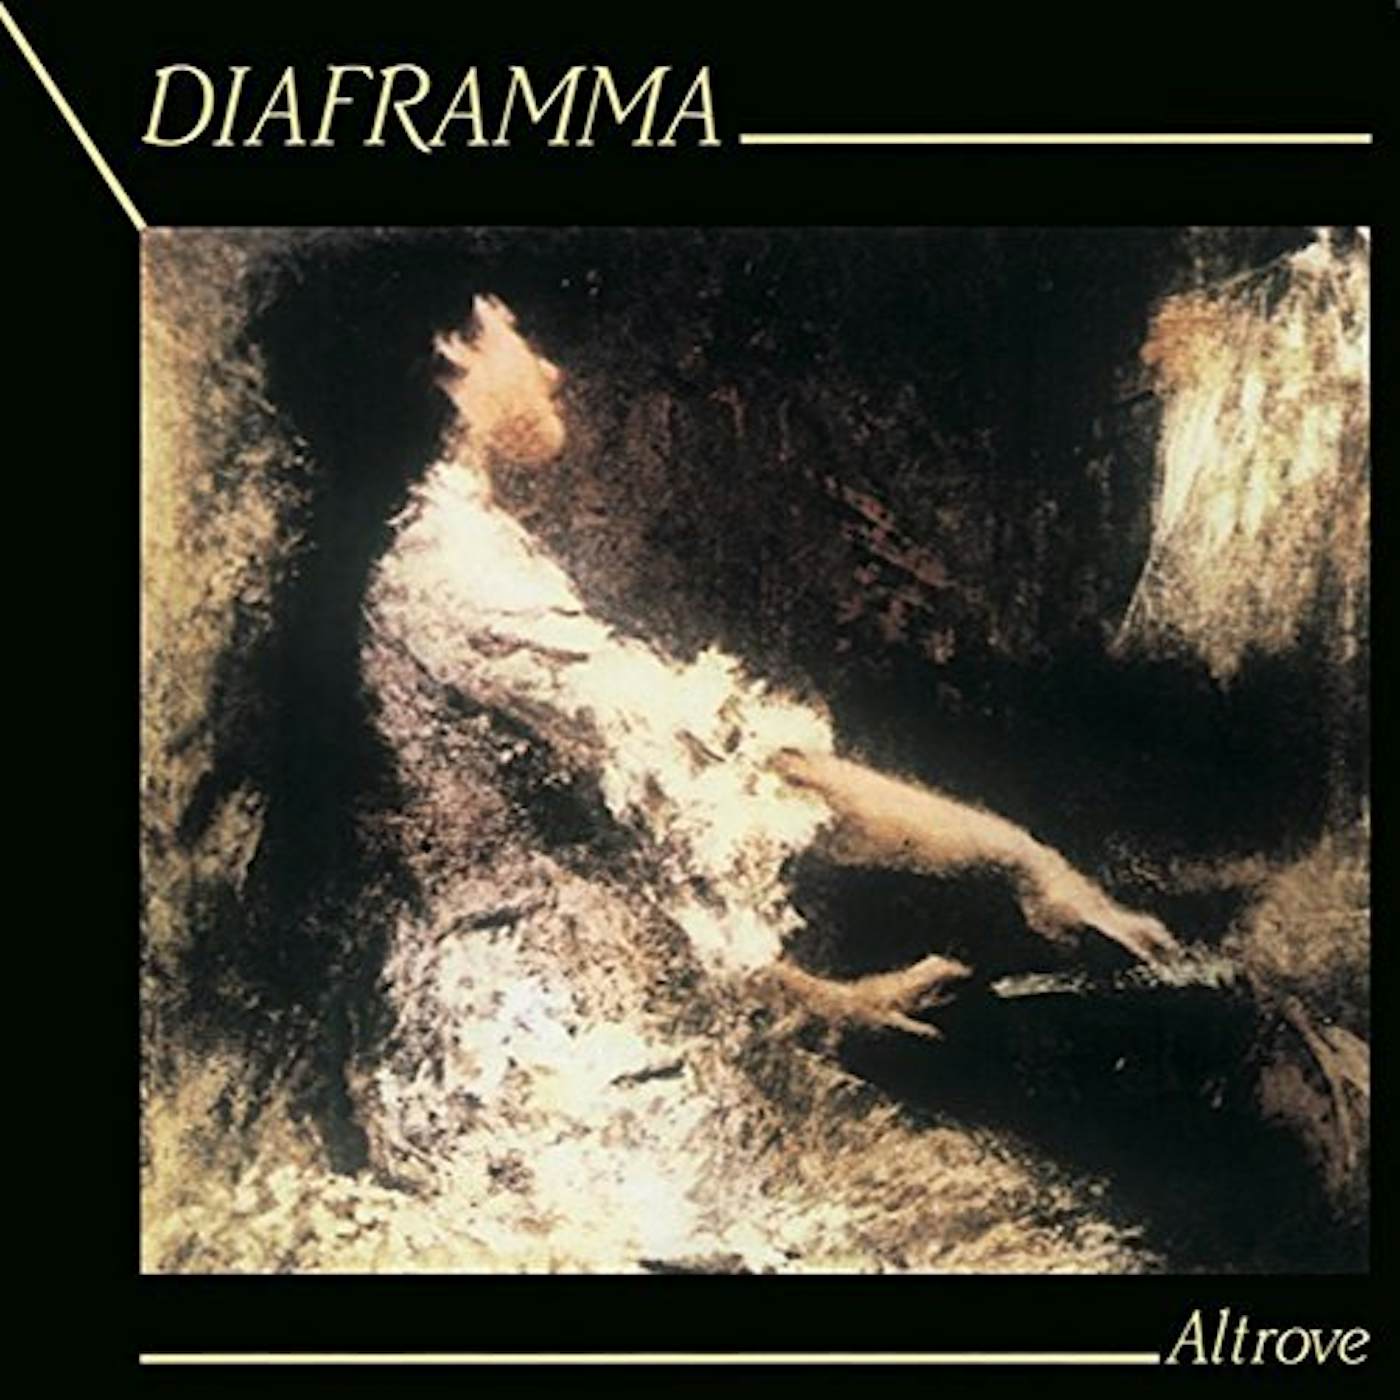 Diaframma Altrove Vinyl Record